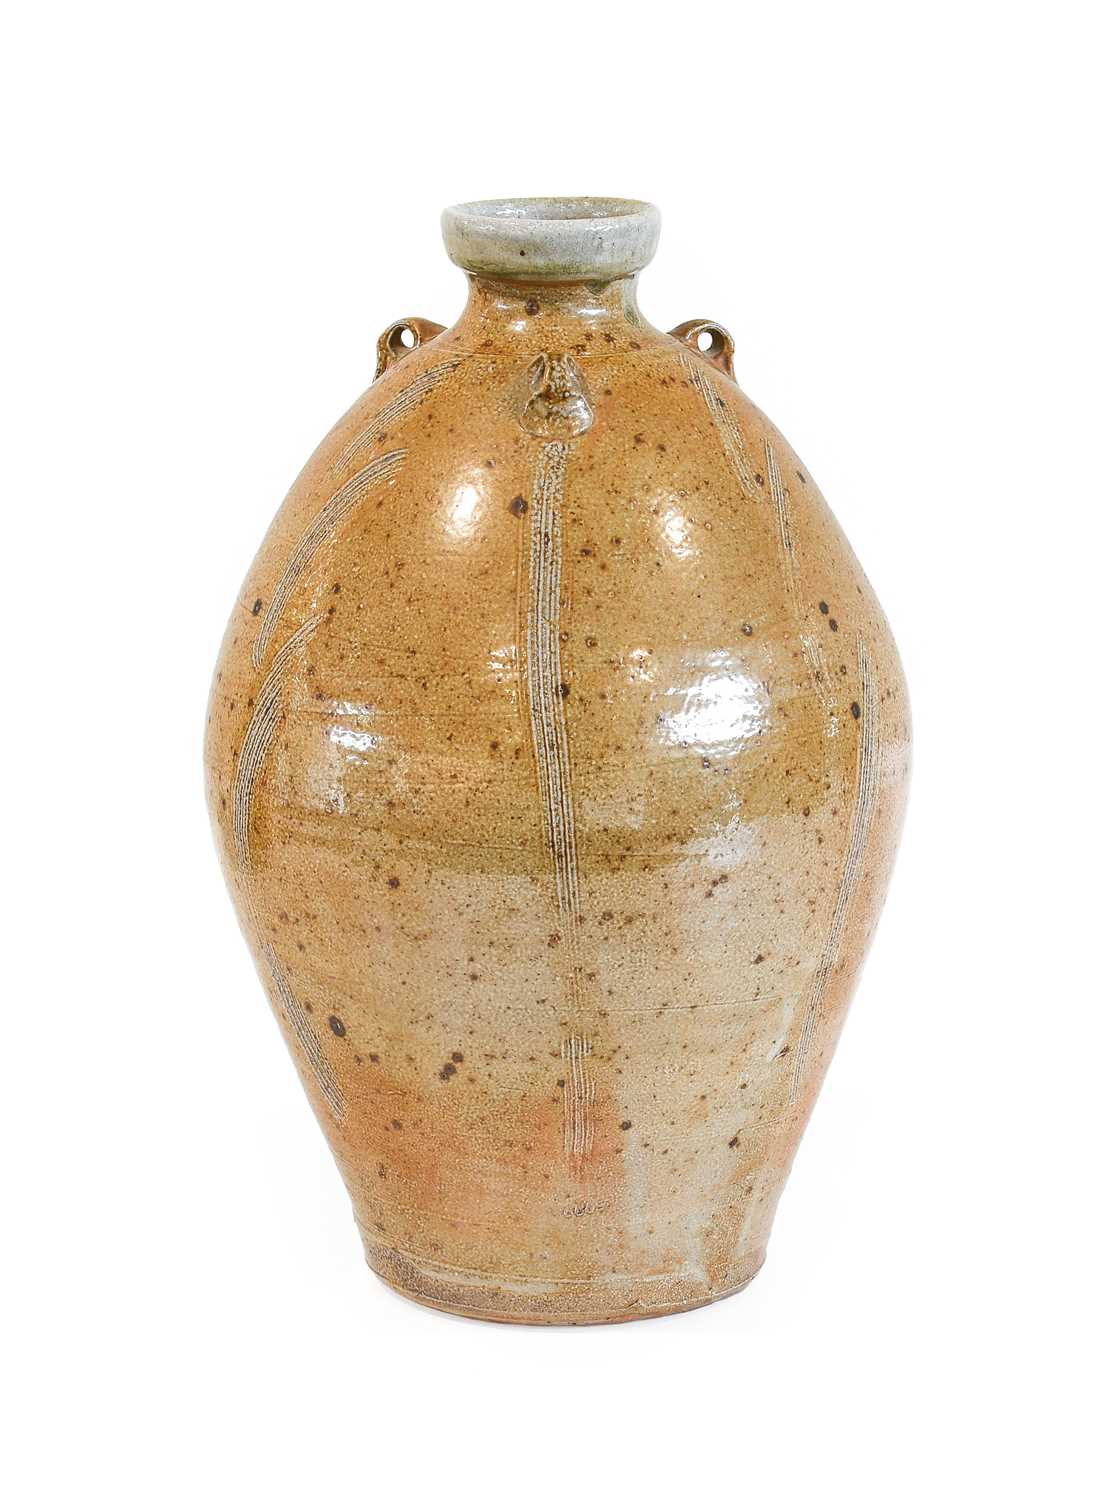 Philip (Phil) Marston Rogers (1951-2020): A Tall Salt Glazed Stoneware Bottle Vase, with three lug